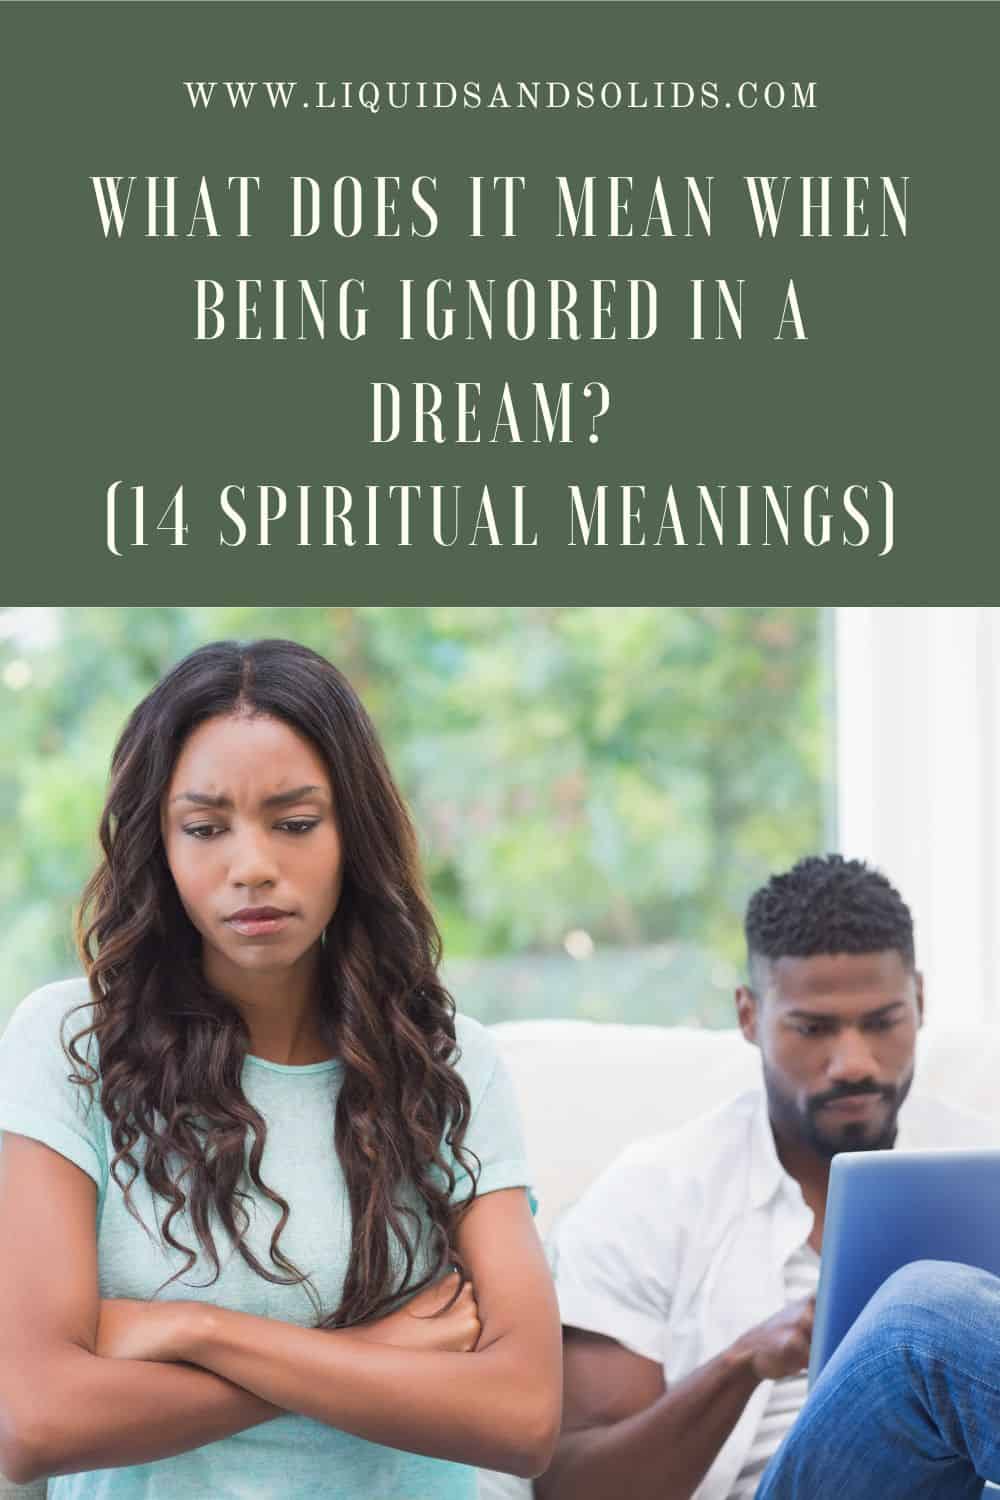  Hvad betyder det, når man bliver ignoreret i en drøm? (14 spirituelle betydninger)